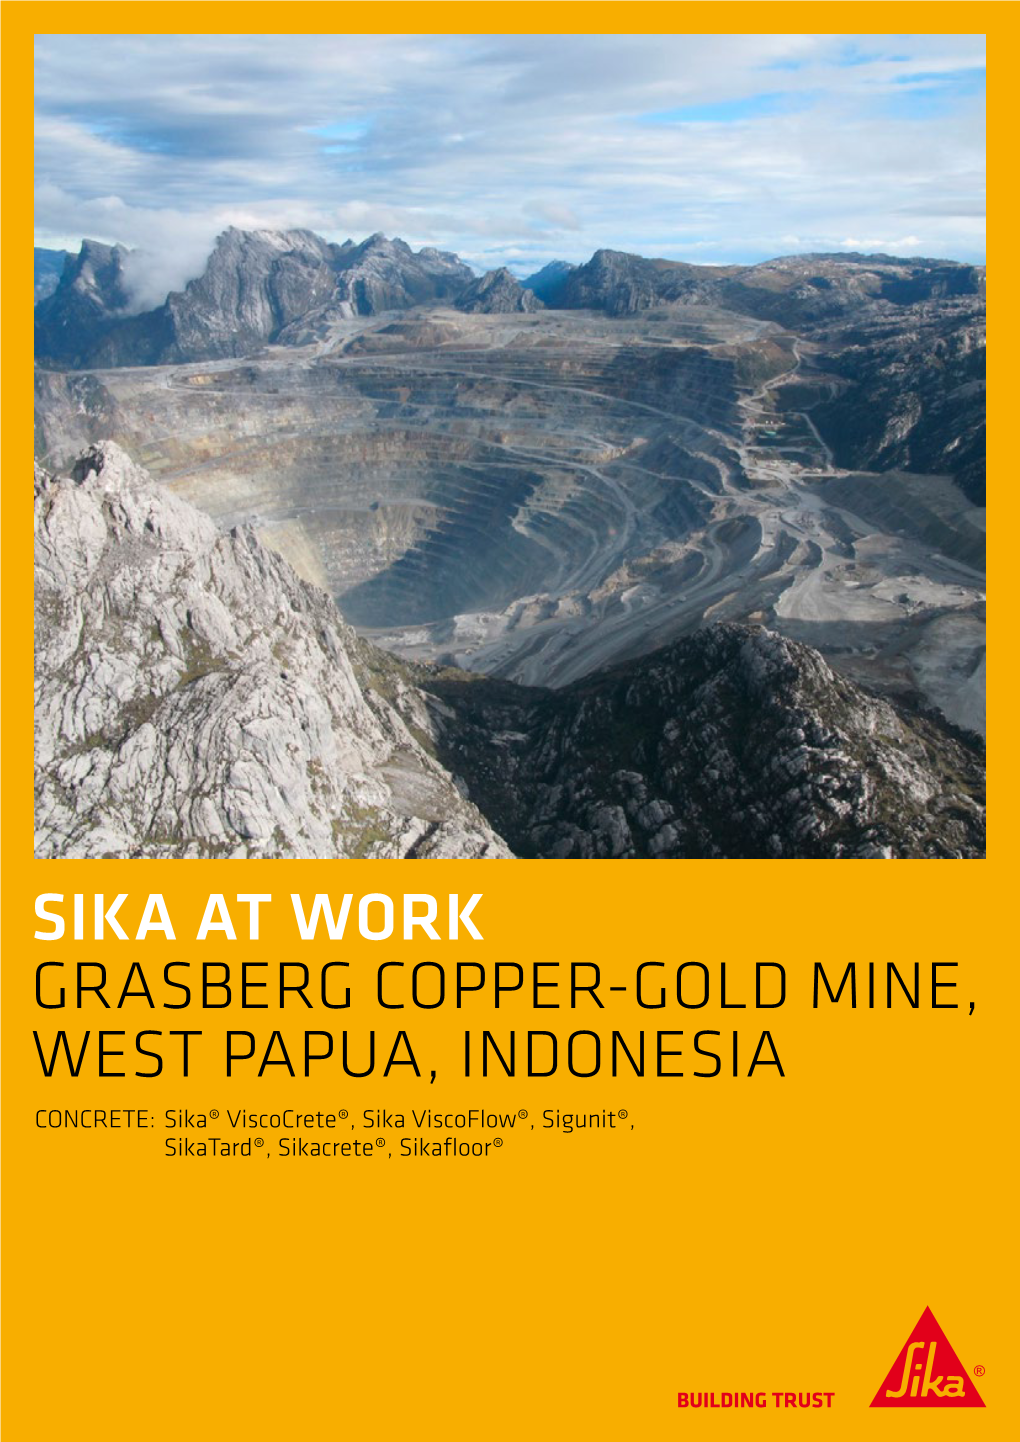 Grasberg Copper-Gold Mine, Indonesia / 10.2015 / Id: 60880